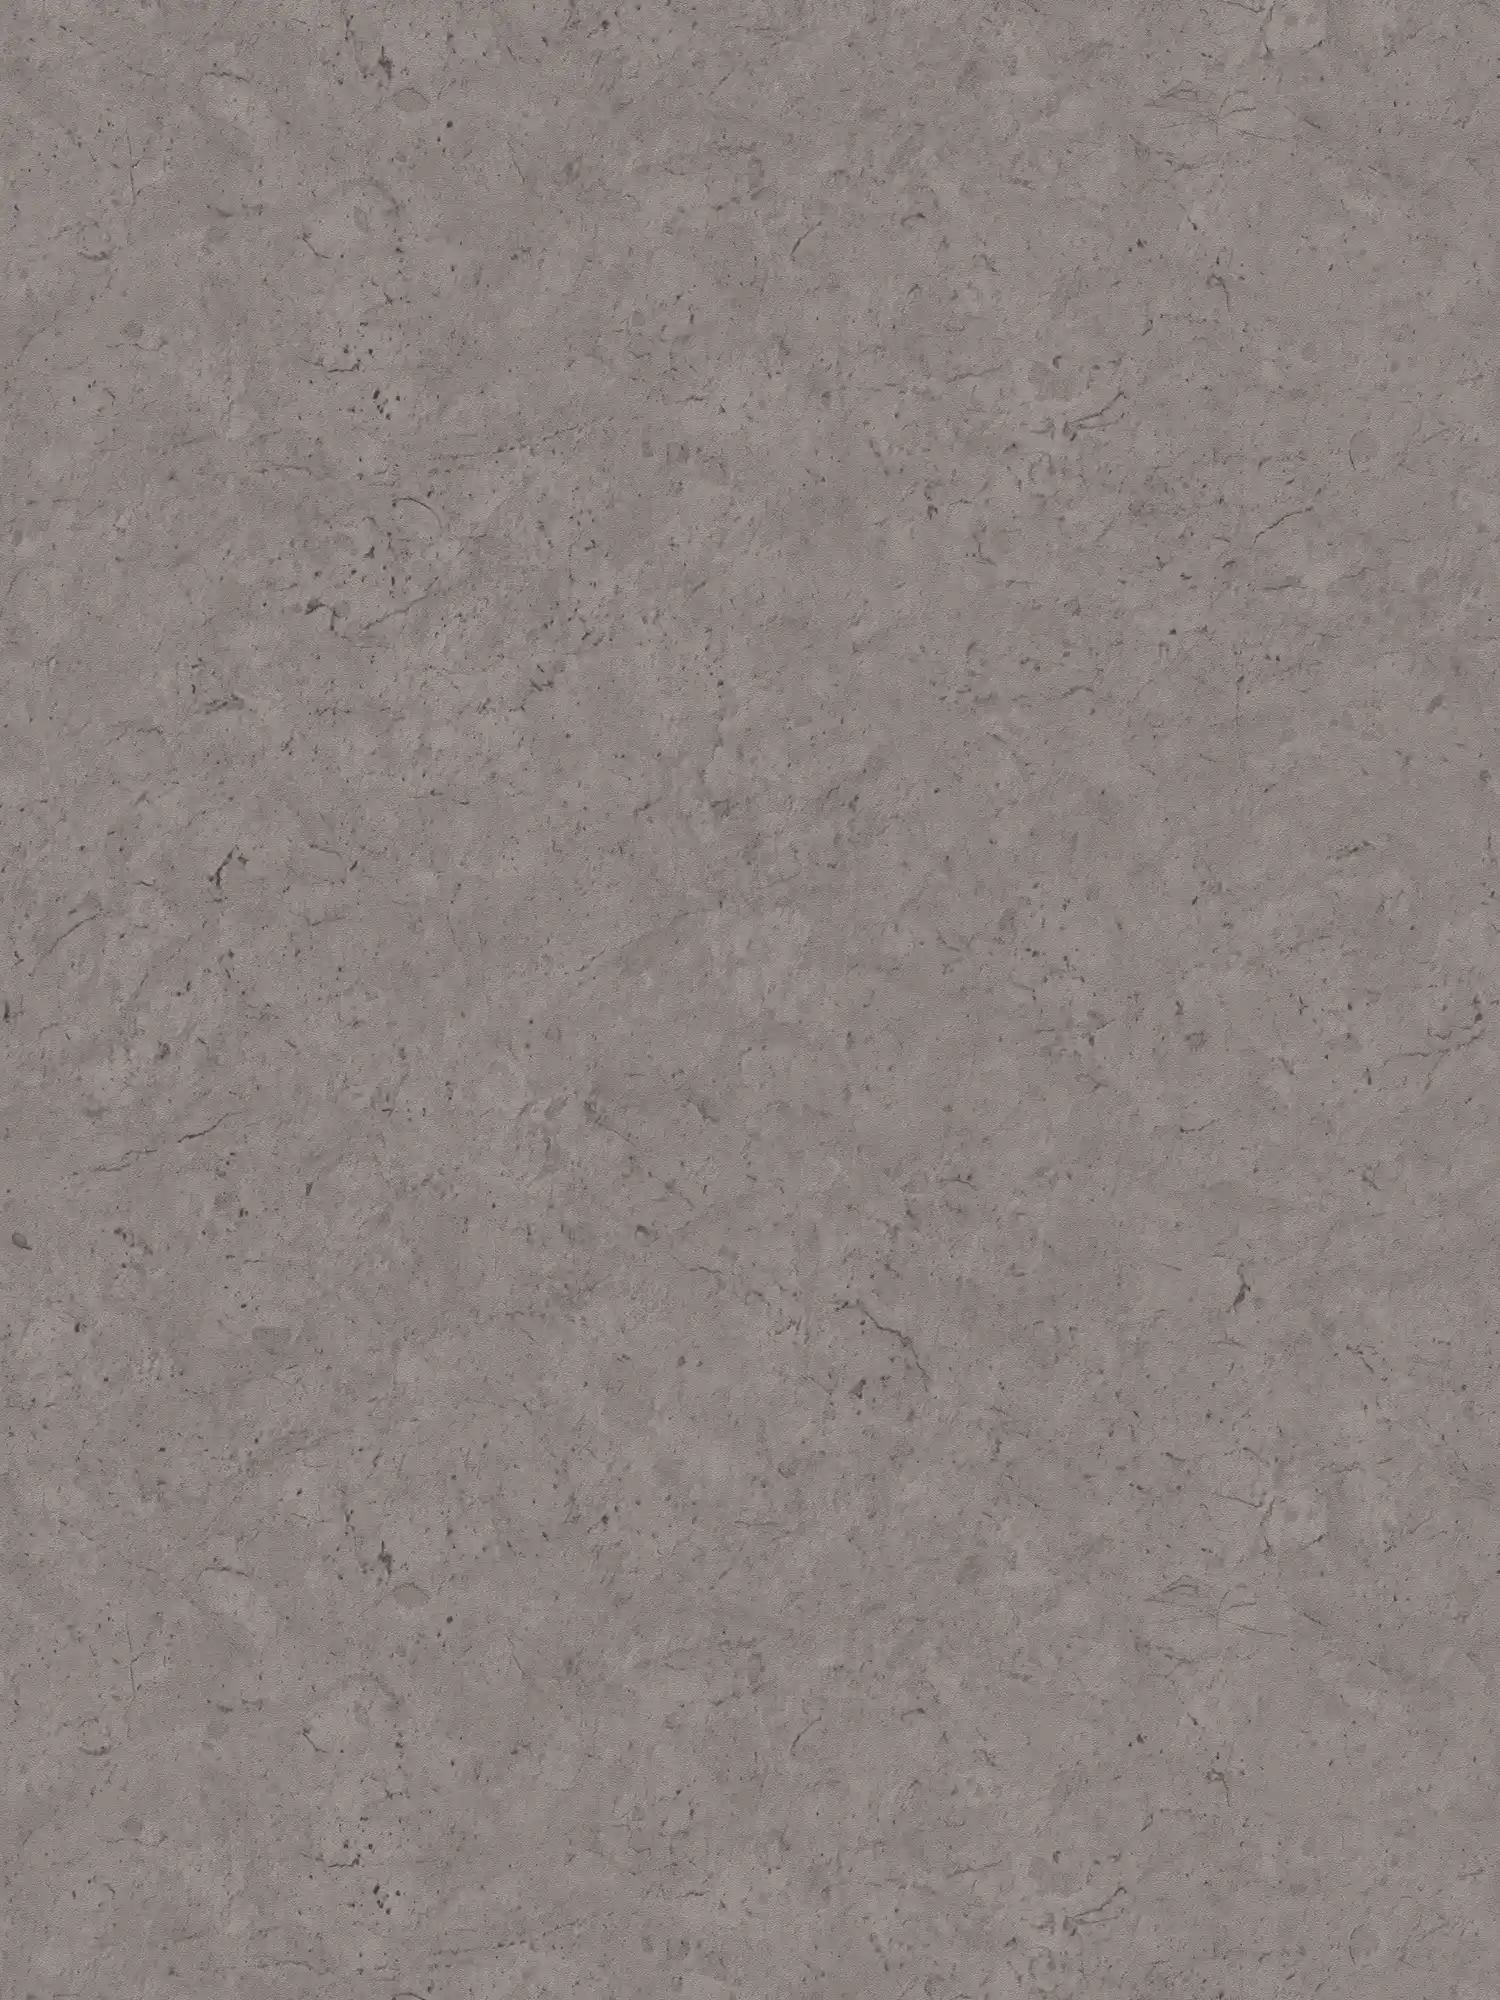 Donker eenheidsbehang met een subtiele betonlook - grijs
